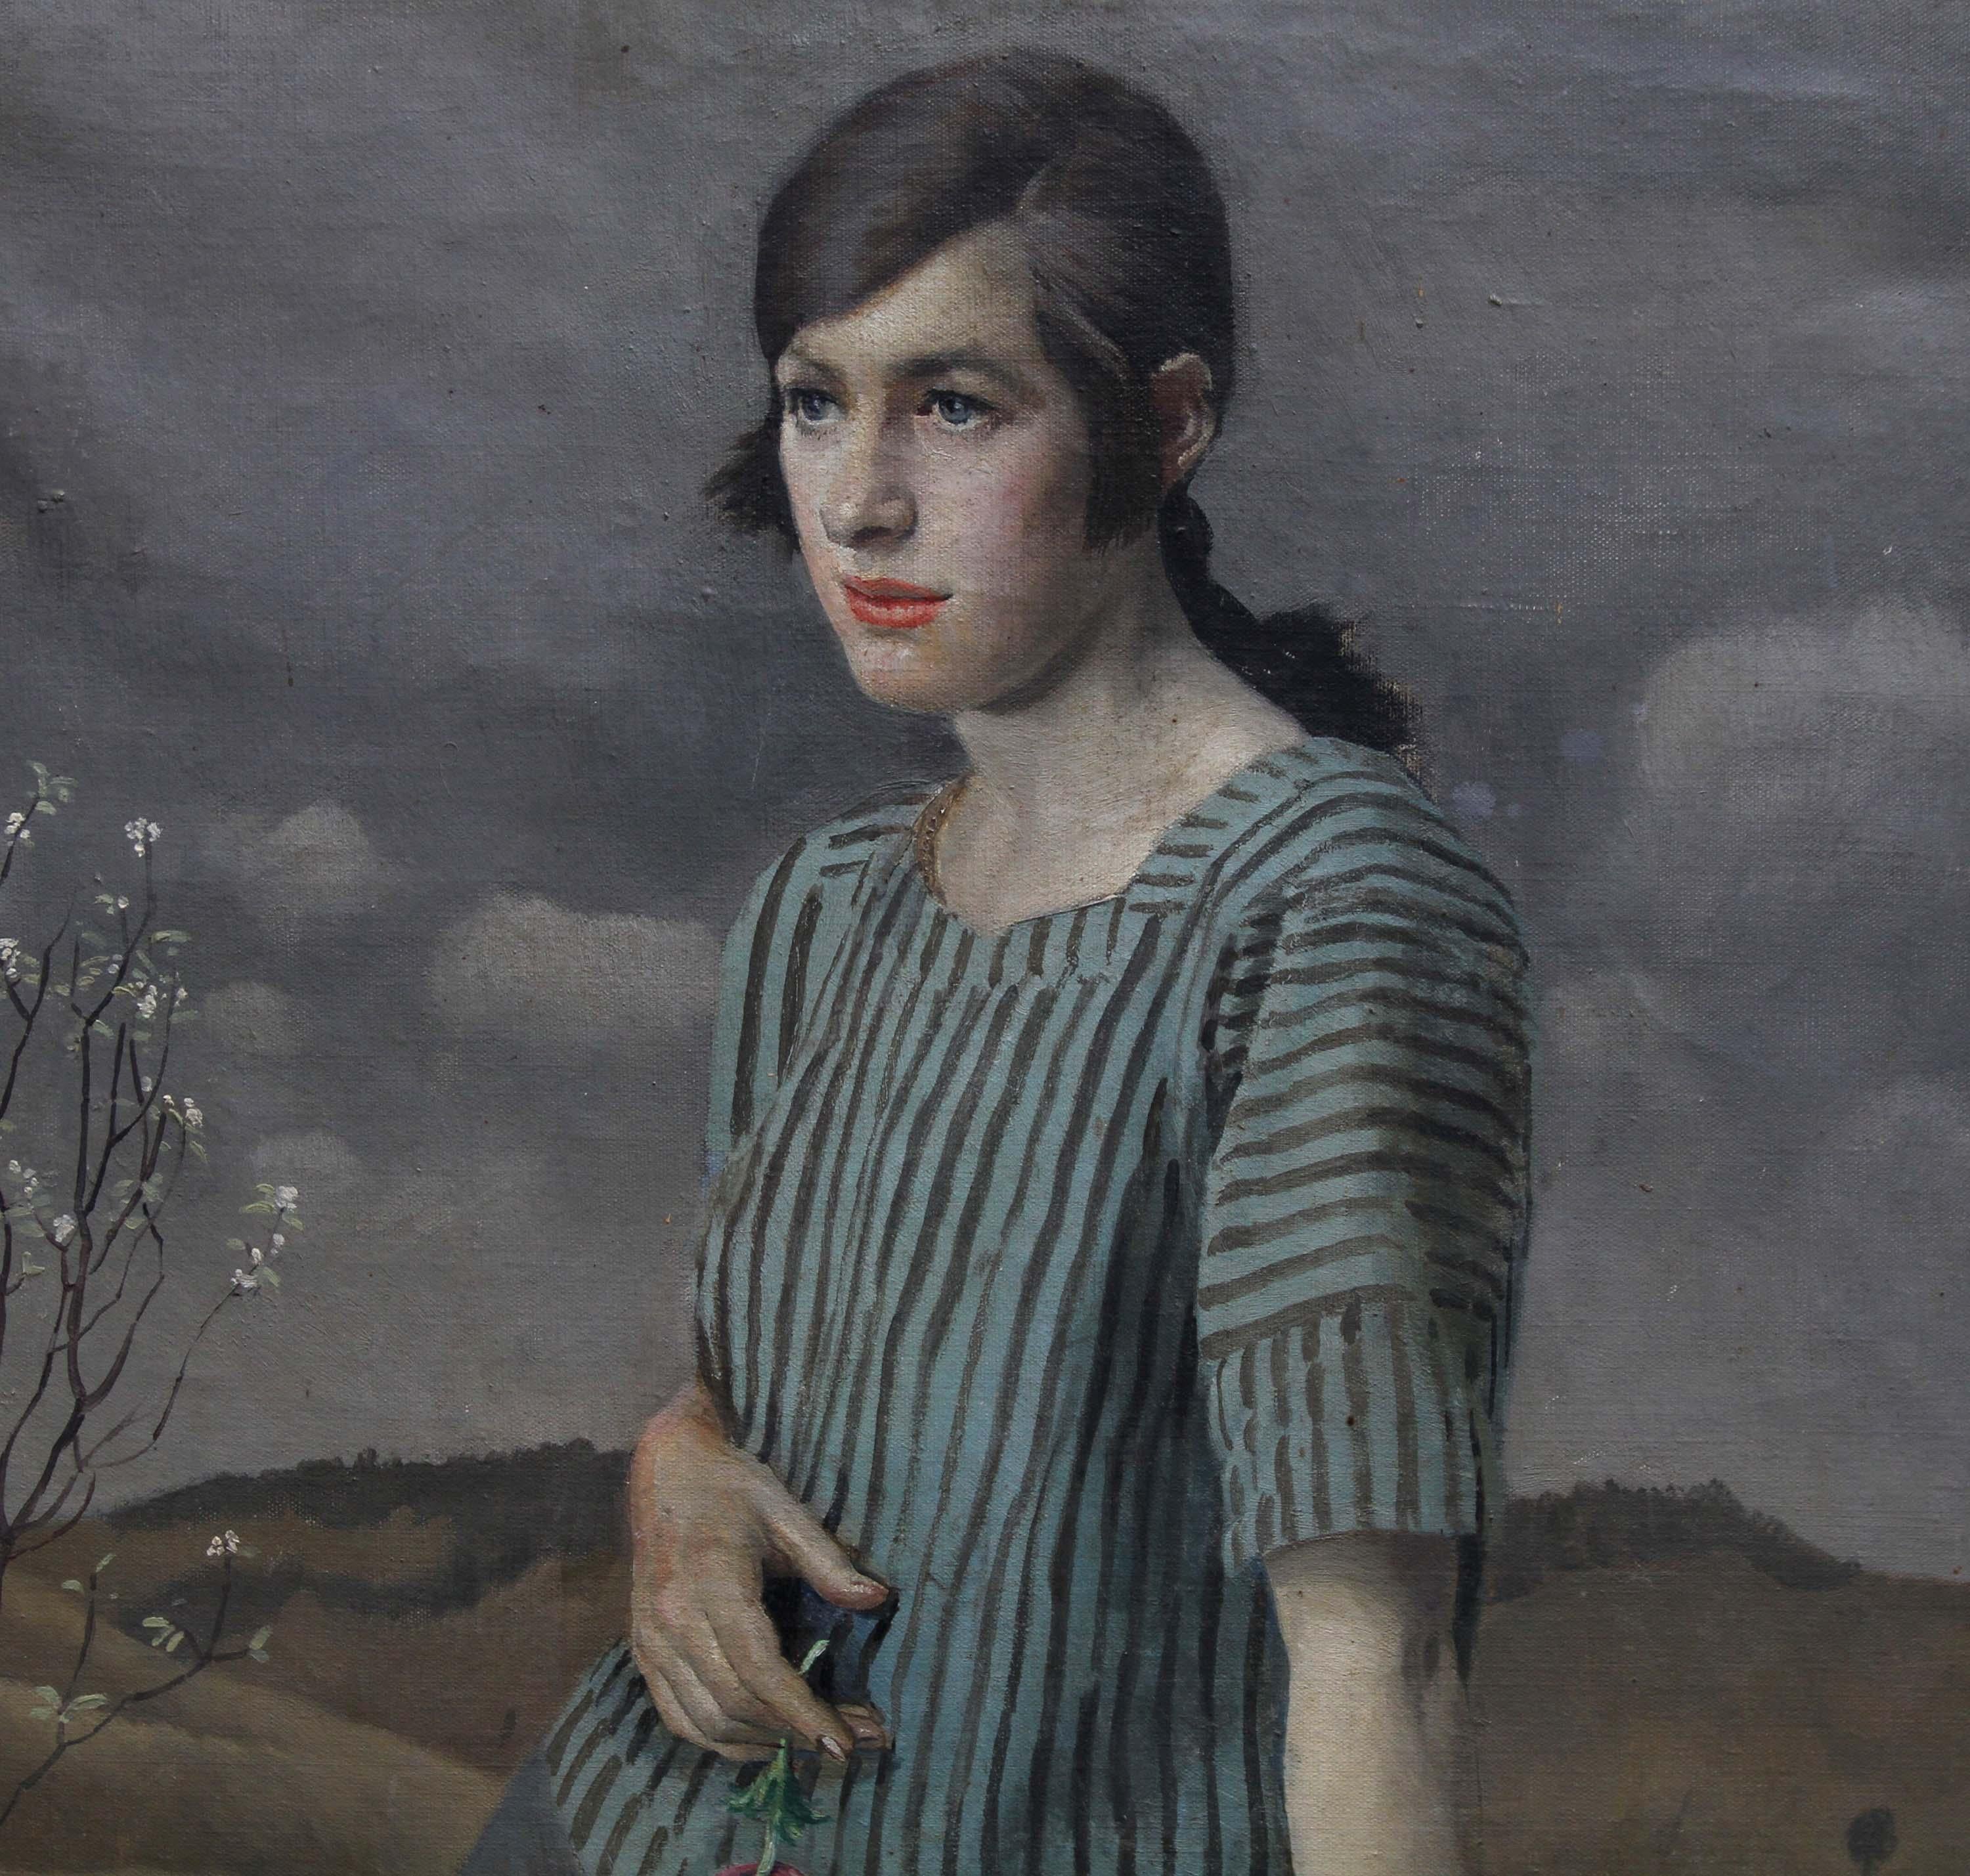 Ein hervorragendes Porträt-Ölgemälde des bekannten britischen Künstlers der Newlyn-Schule Harold Harvey. Die Dargestellte ist Clara Matthews und wurde 1922 gemalt. Das Ganzkörperporträt zeigt Clara in einer Landschaft und hält eine Rose. Auf